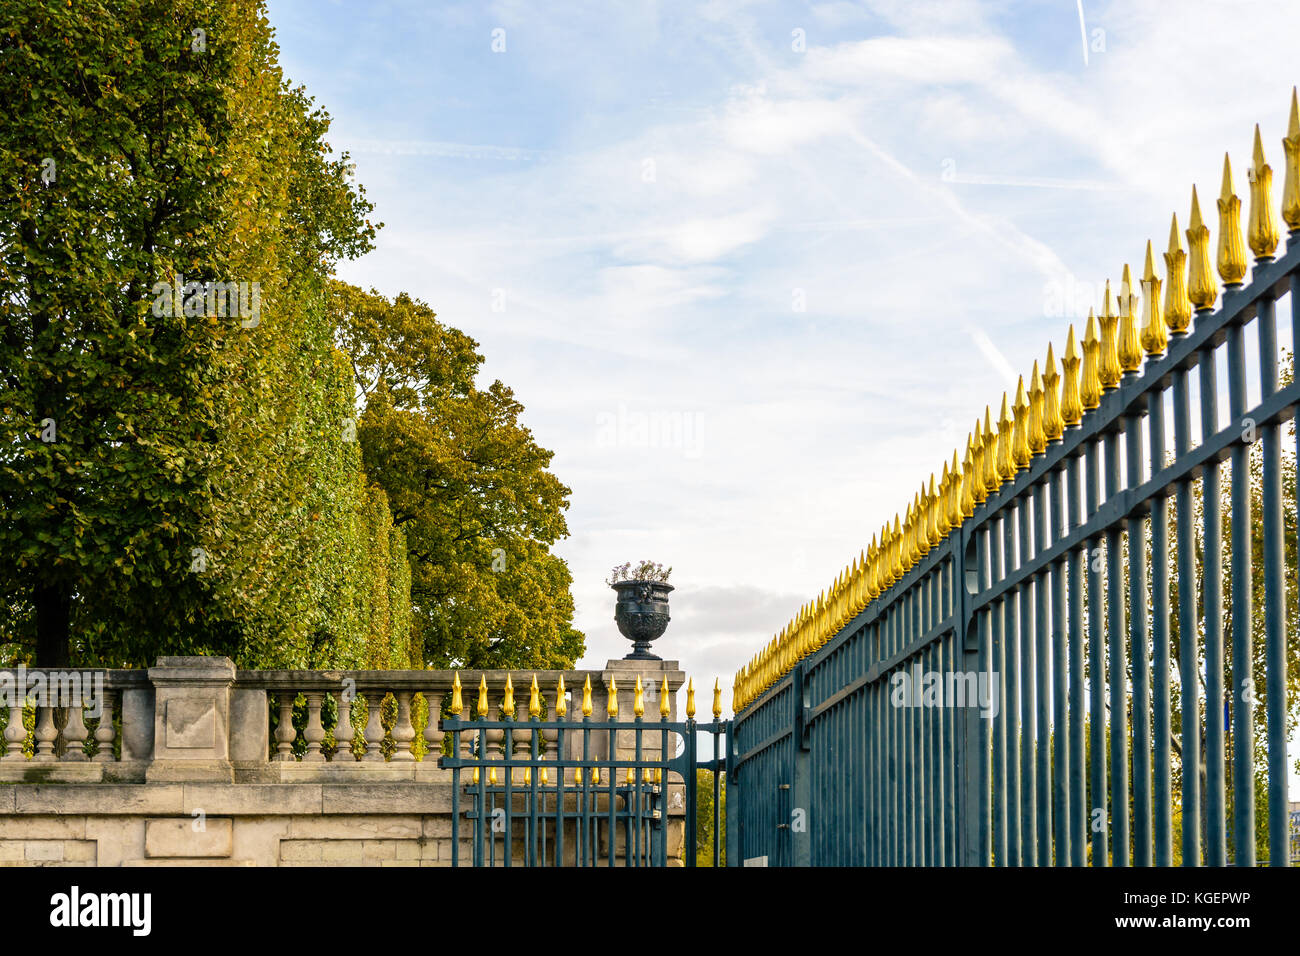 L'imposant pic de clôture en fer forgé du jardin des Tuileries à Paris et ses conseils en forme de fleur d'or. Banque D'Images